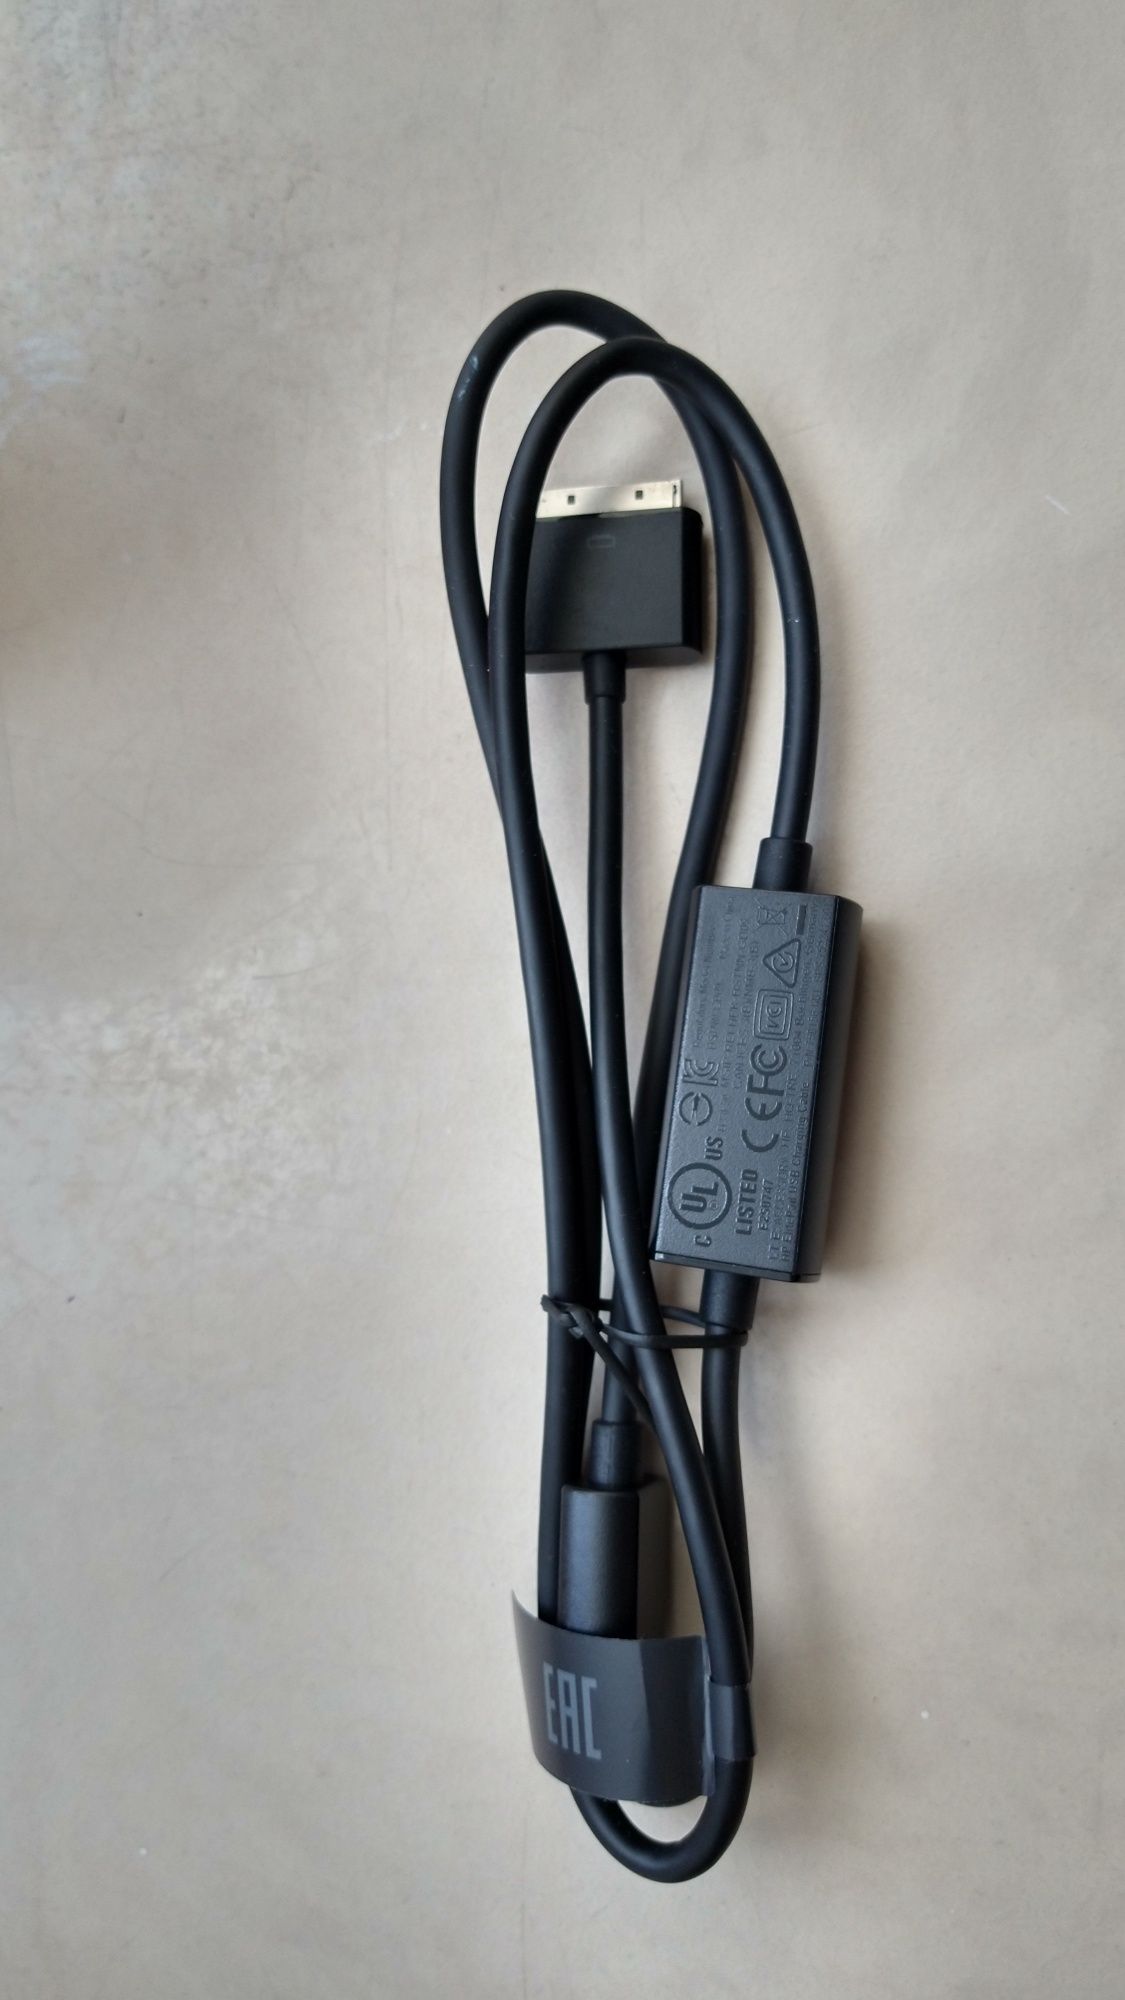 Kabel USB HP Elite Pad oryginał.